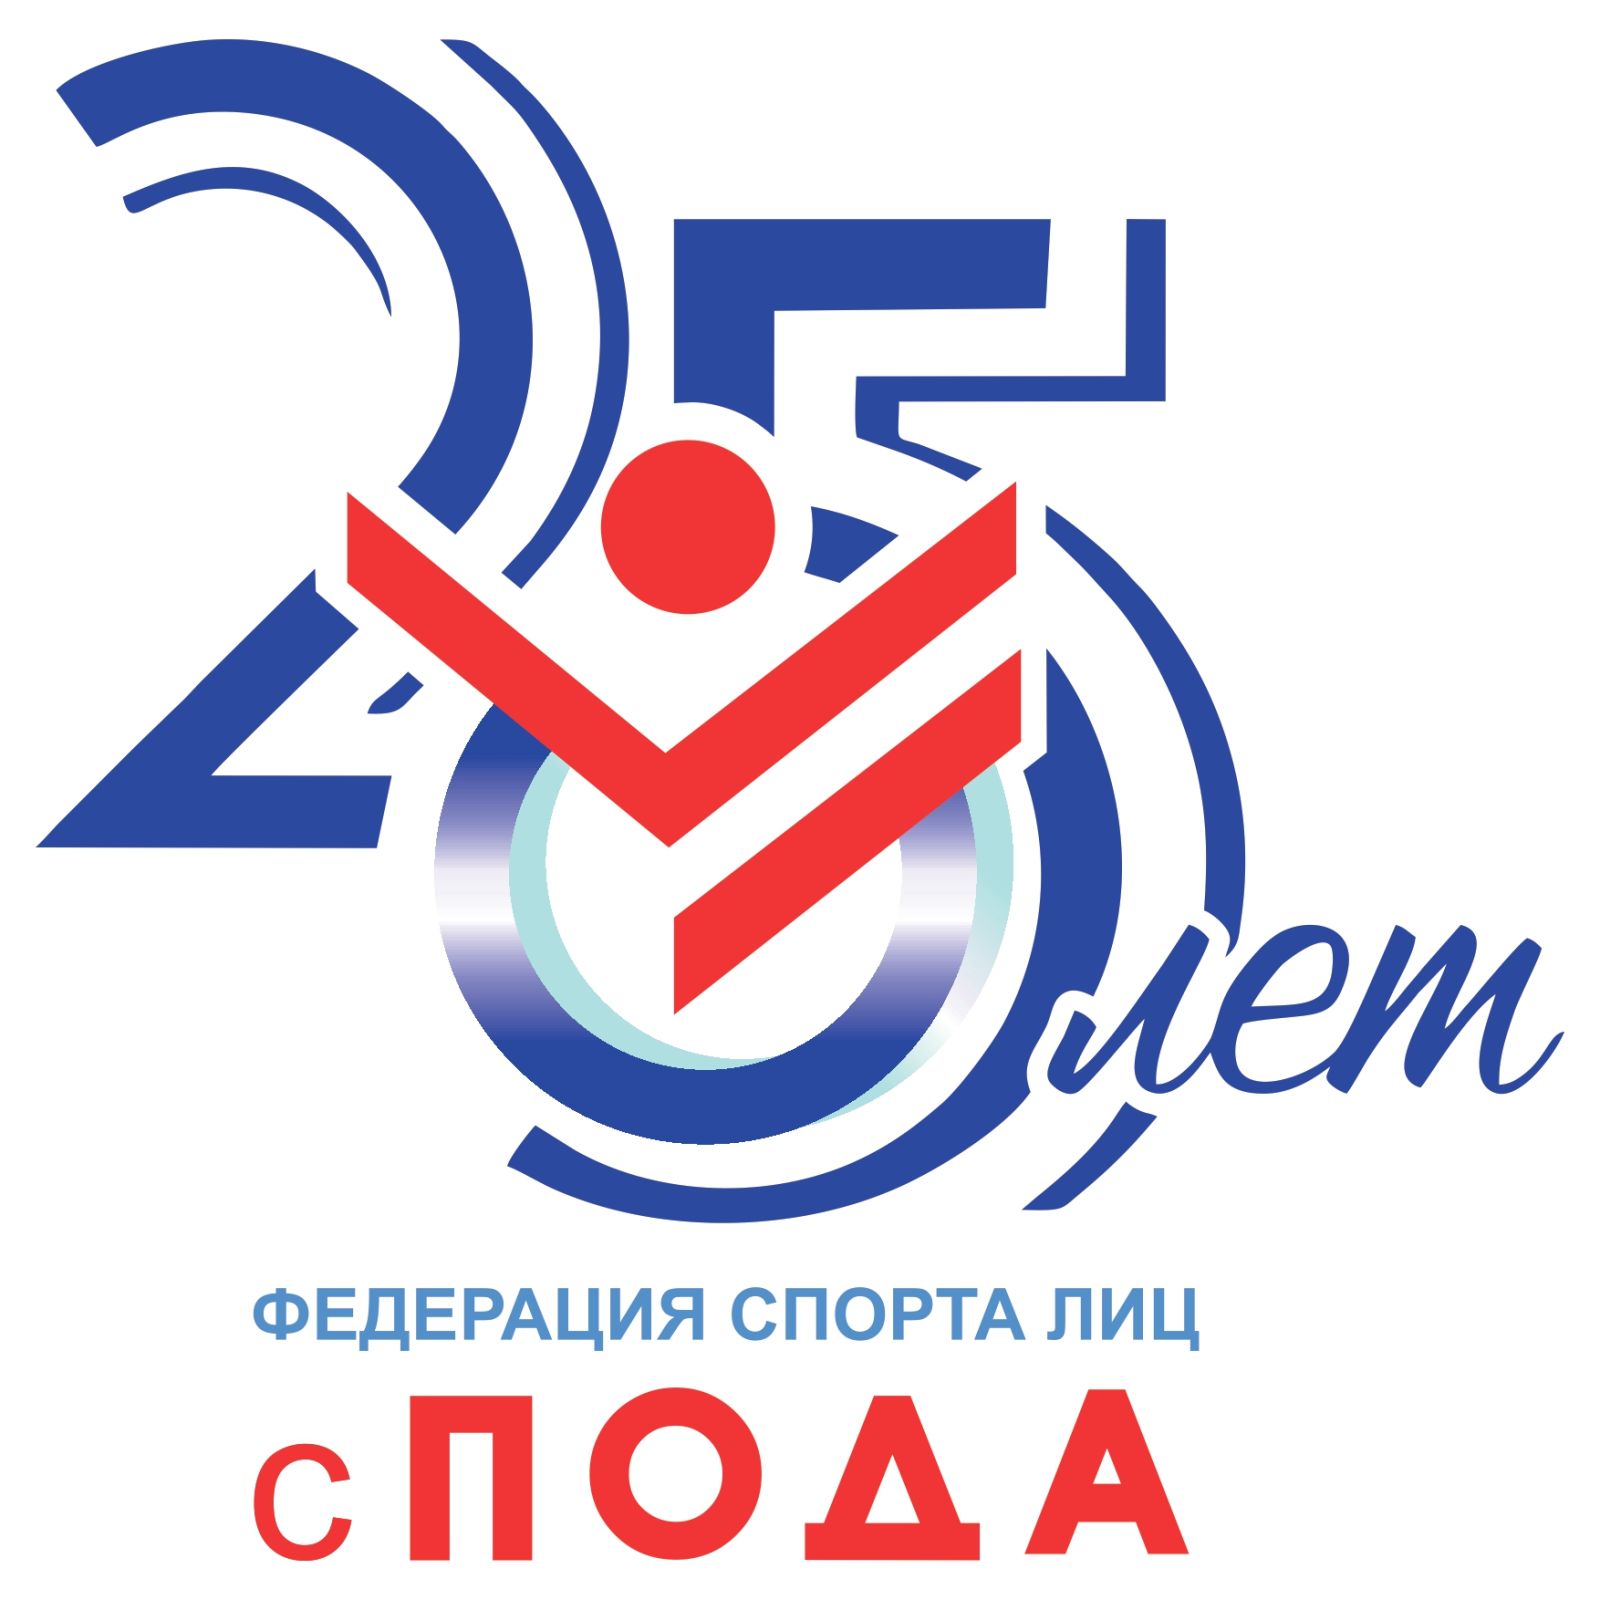 Вниманию СМИ! 9 июля в подмосковном Подольске состоятся торжественные мероприятия, приуроченные к 25-летнему Юбилею Всероссийской Федерации ПОДА